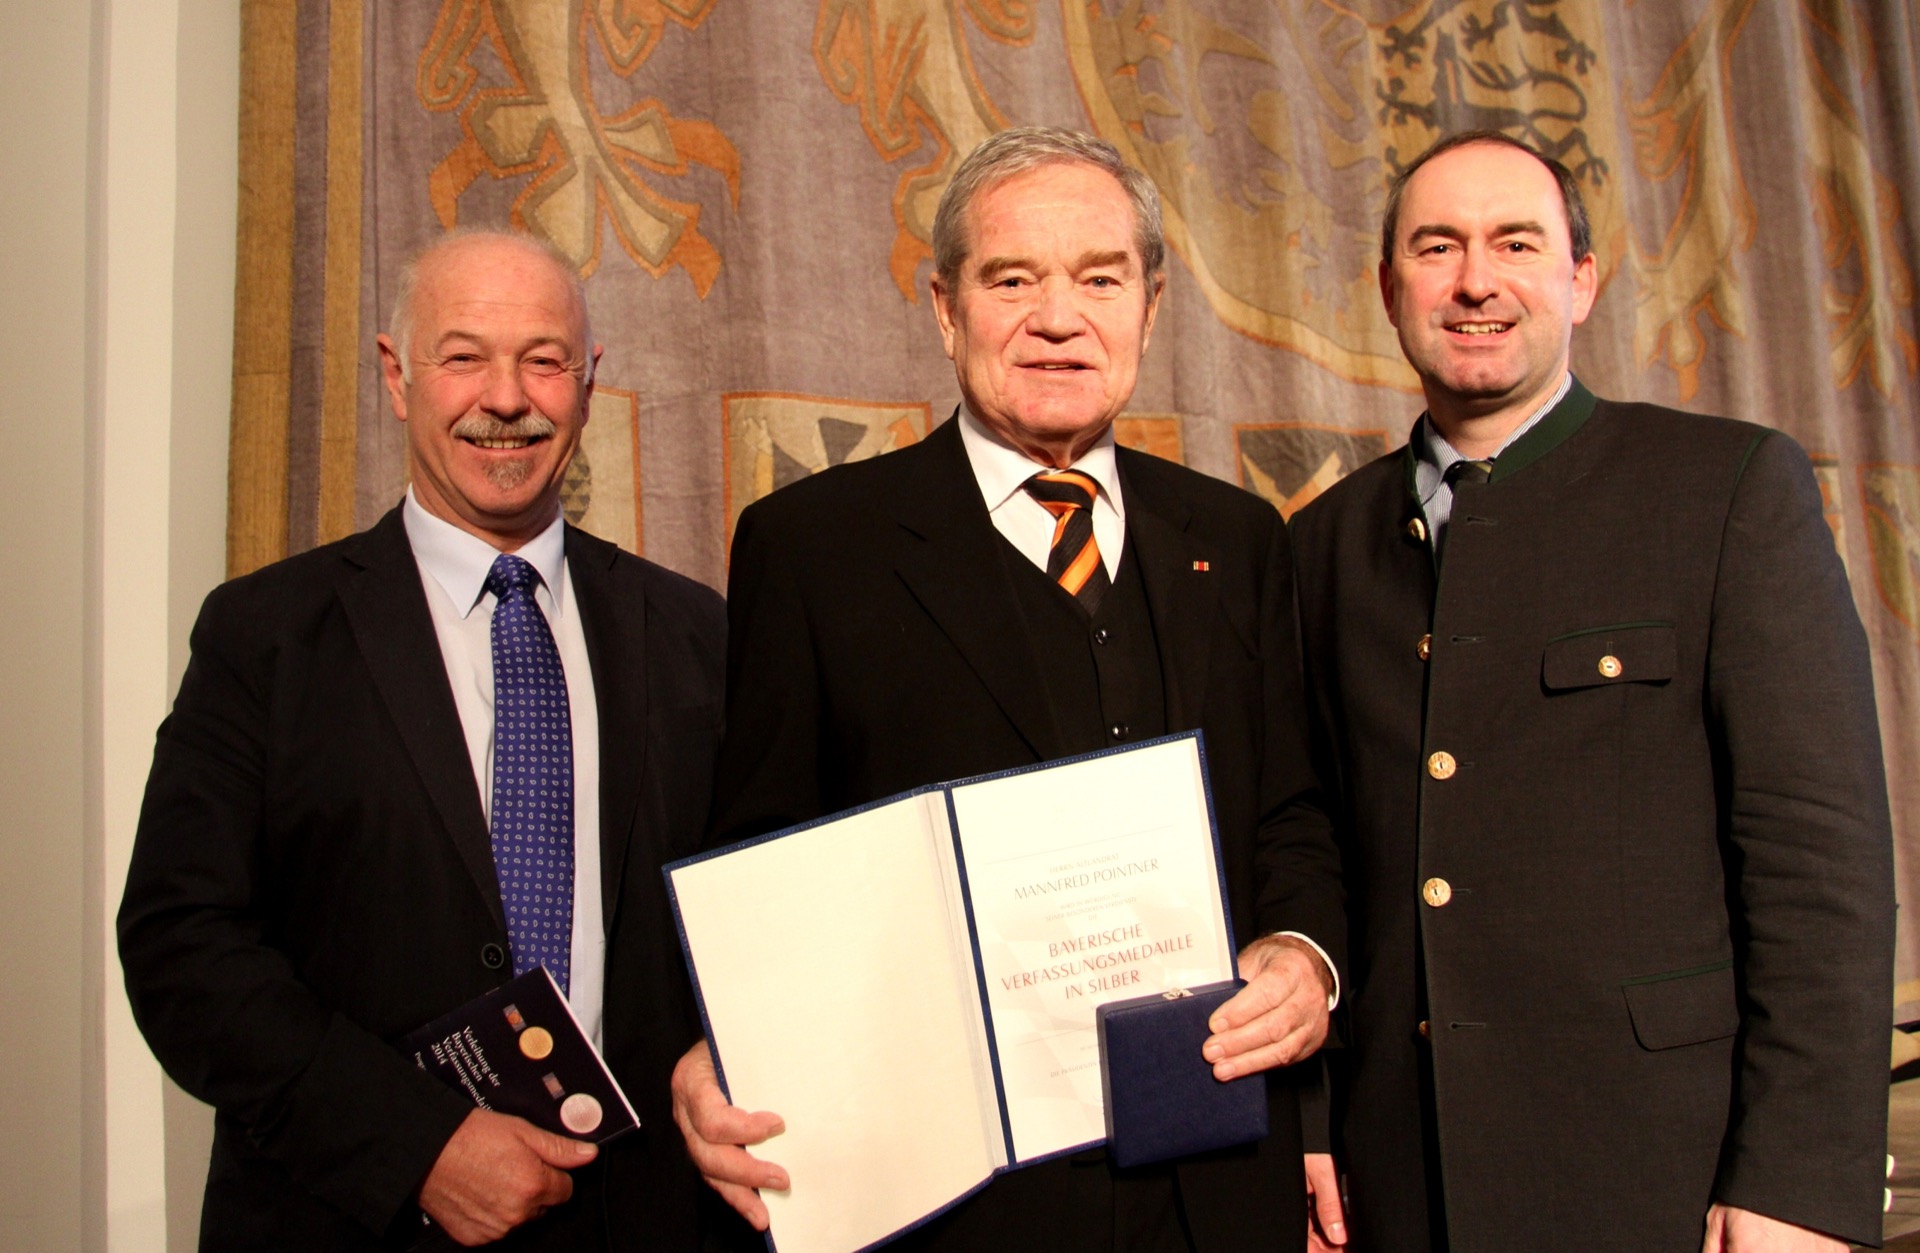 Unser Pressefoto zeigt (von links) den FREIE WÄHLER-Abgeordneten Benno Zierer, den Fraktionsvorsitzenden Hubert Aiwanger und den Preisträger Manfred Pointner.